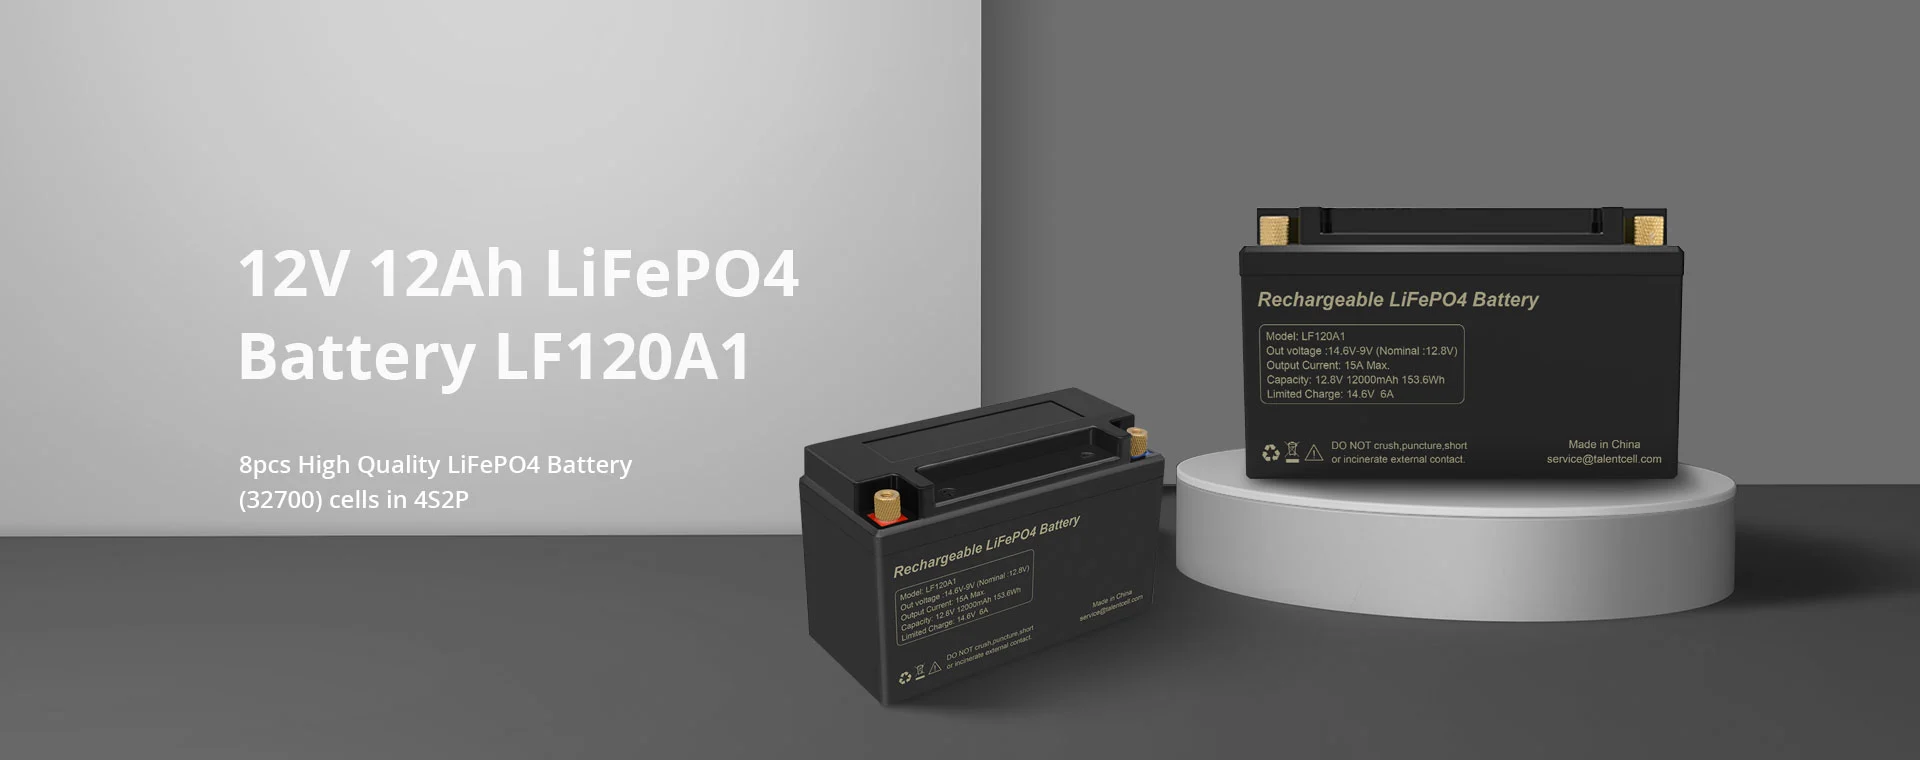 12V 200Ah LiFePO4 Battery